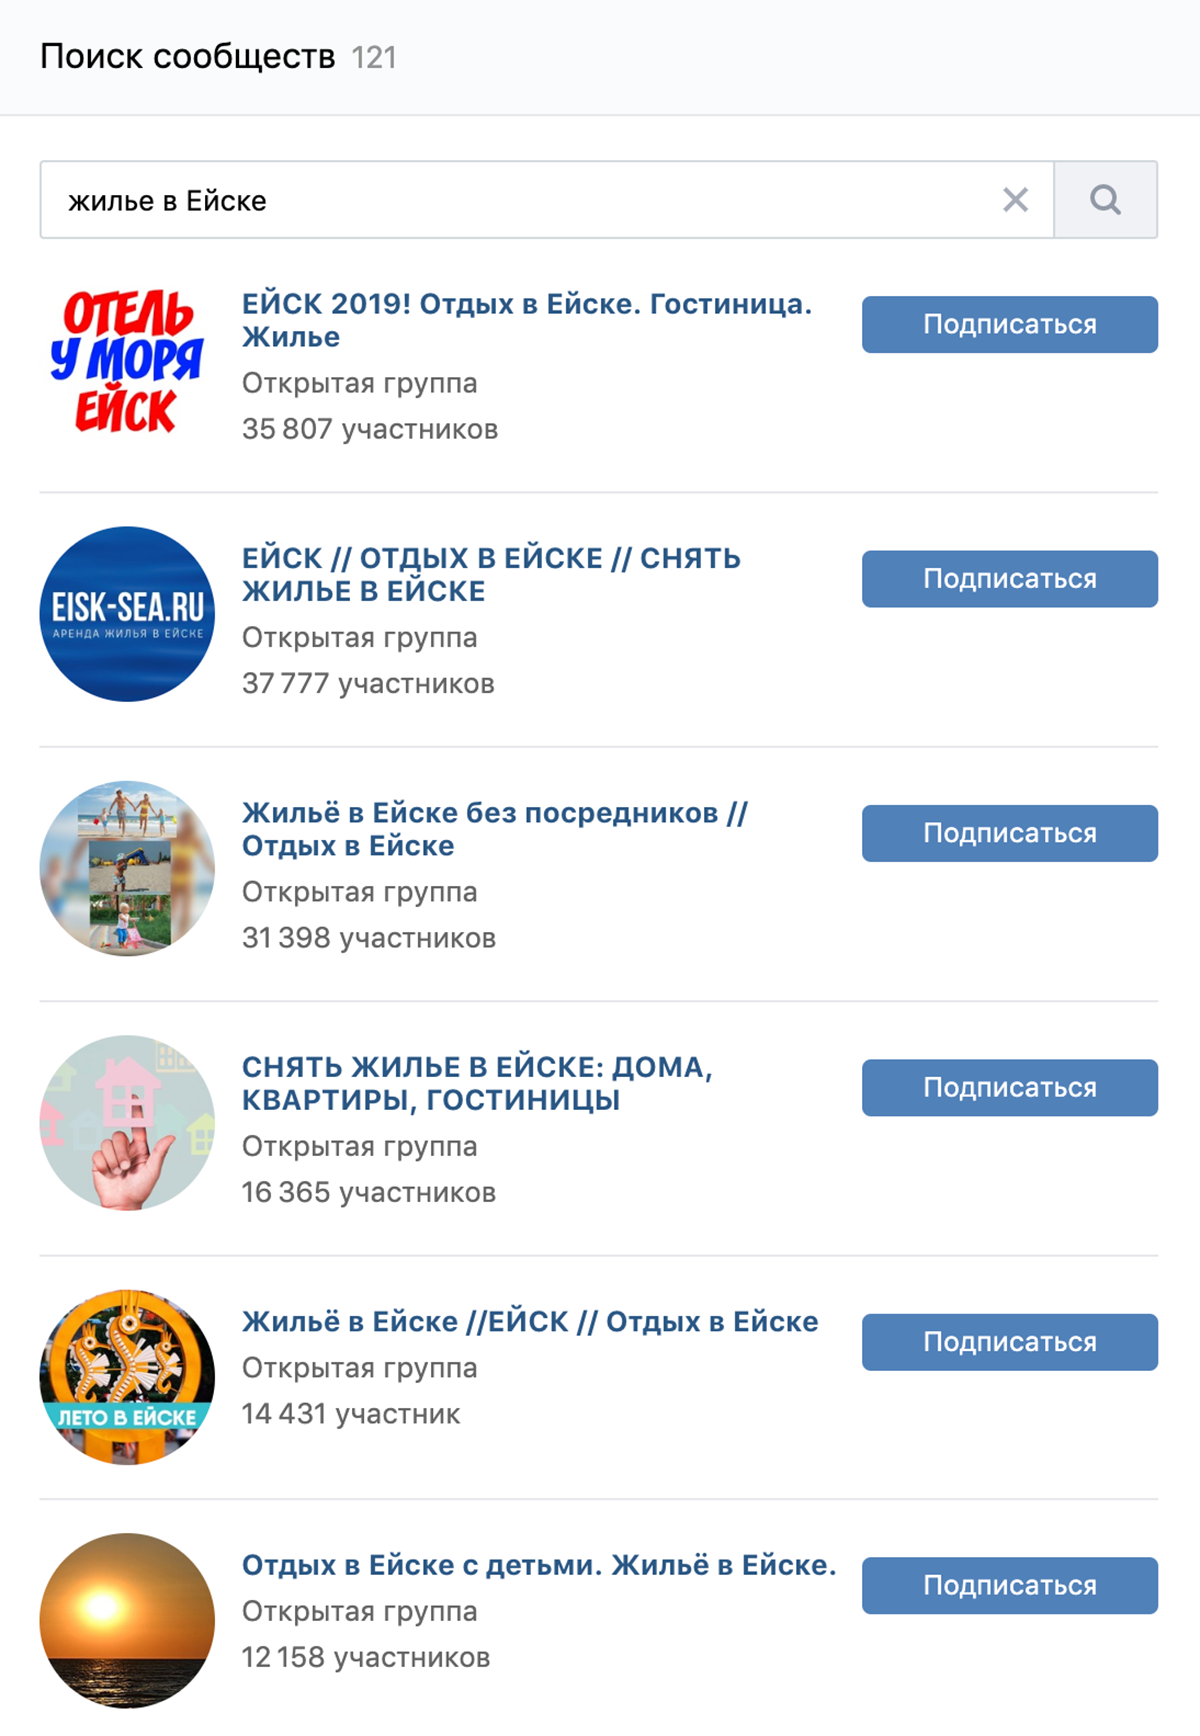 Во Вконтакте 180 сообществ, в которых предлагают жилье для туристов в Ейске